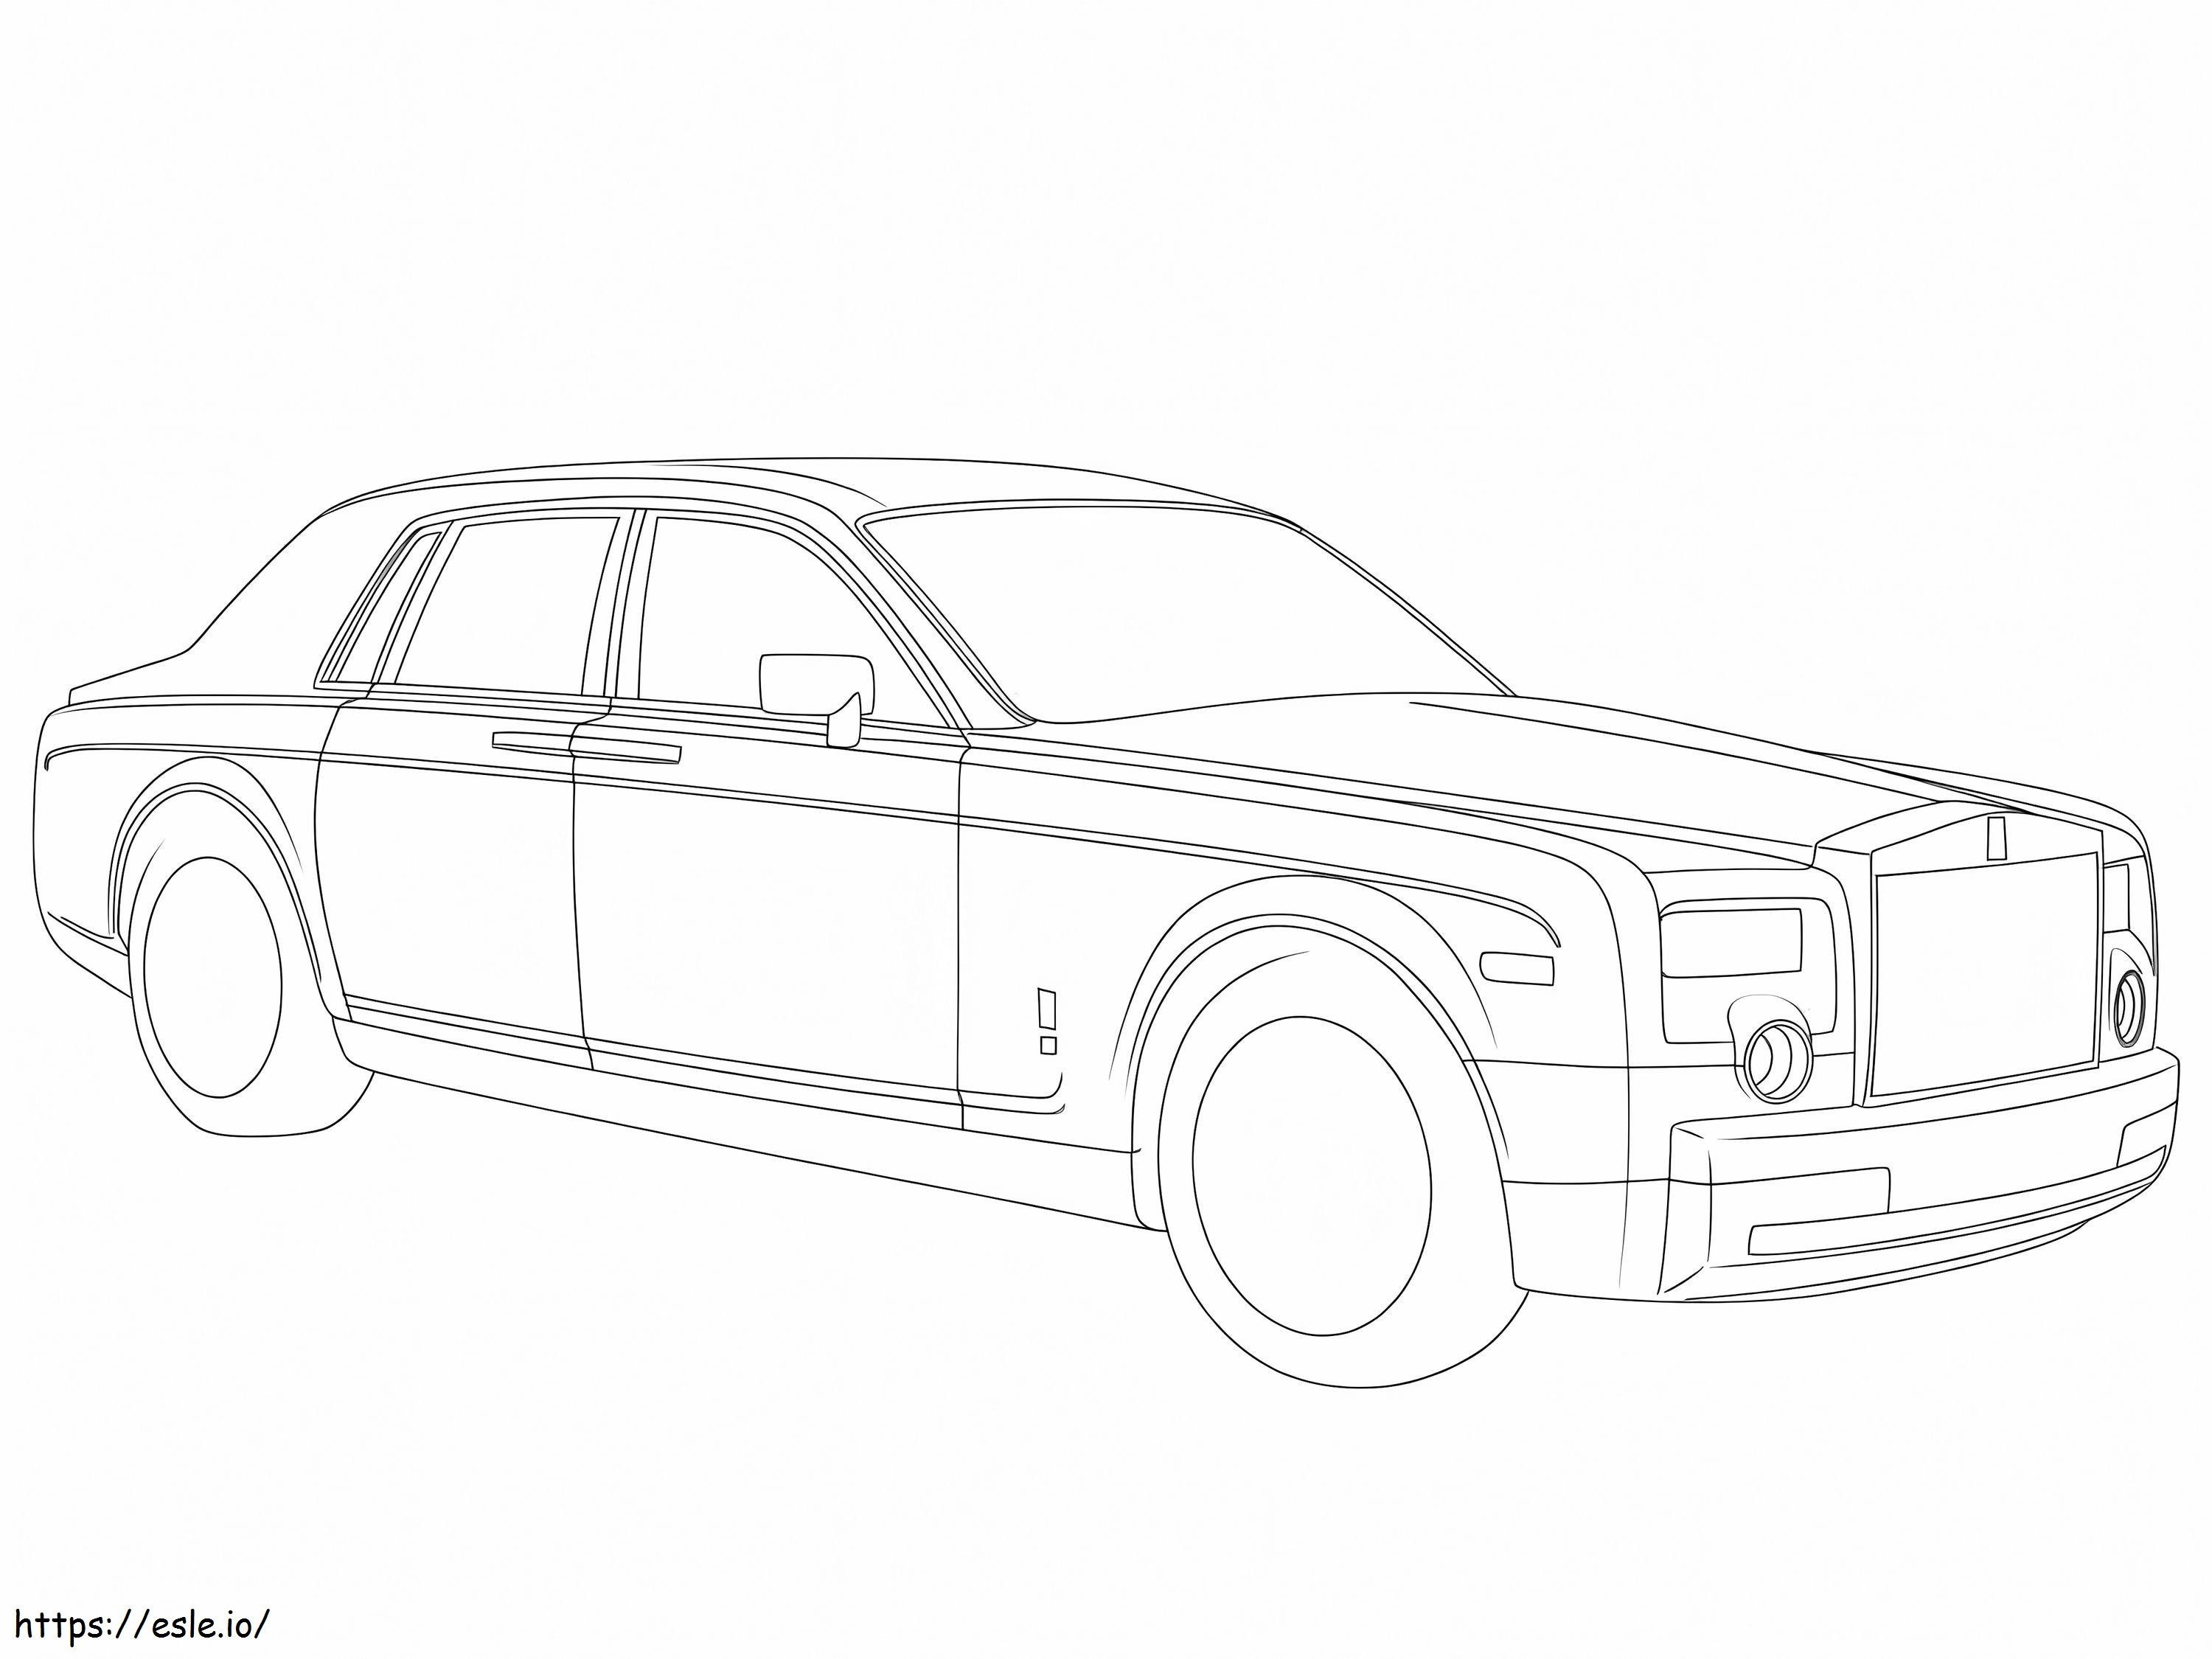 Drukuj Rolls-Royce'a kolorowanka